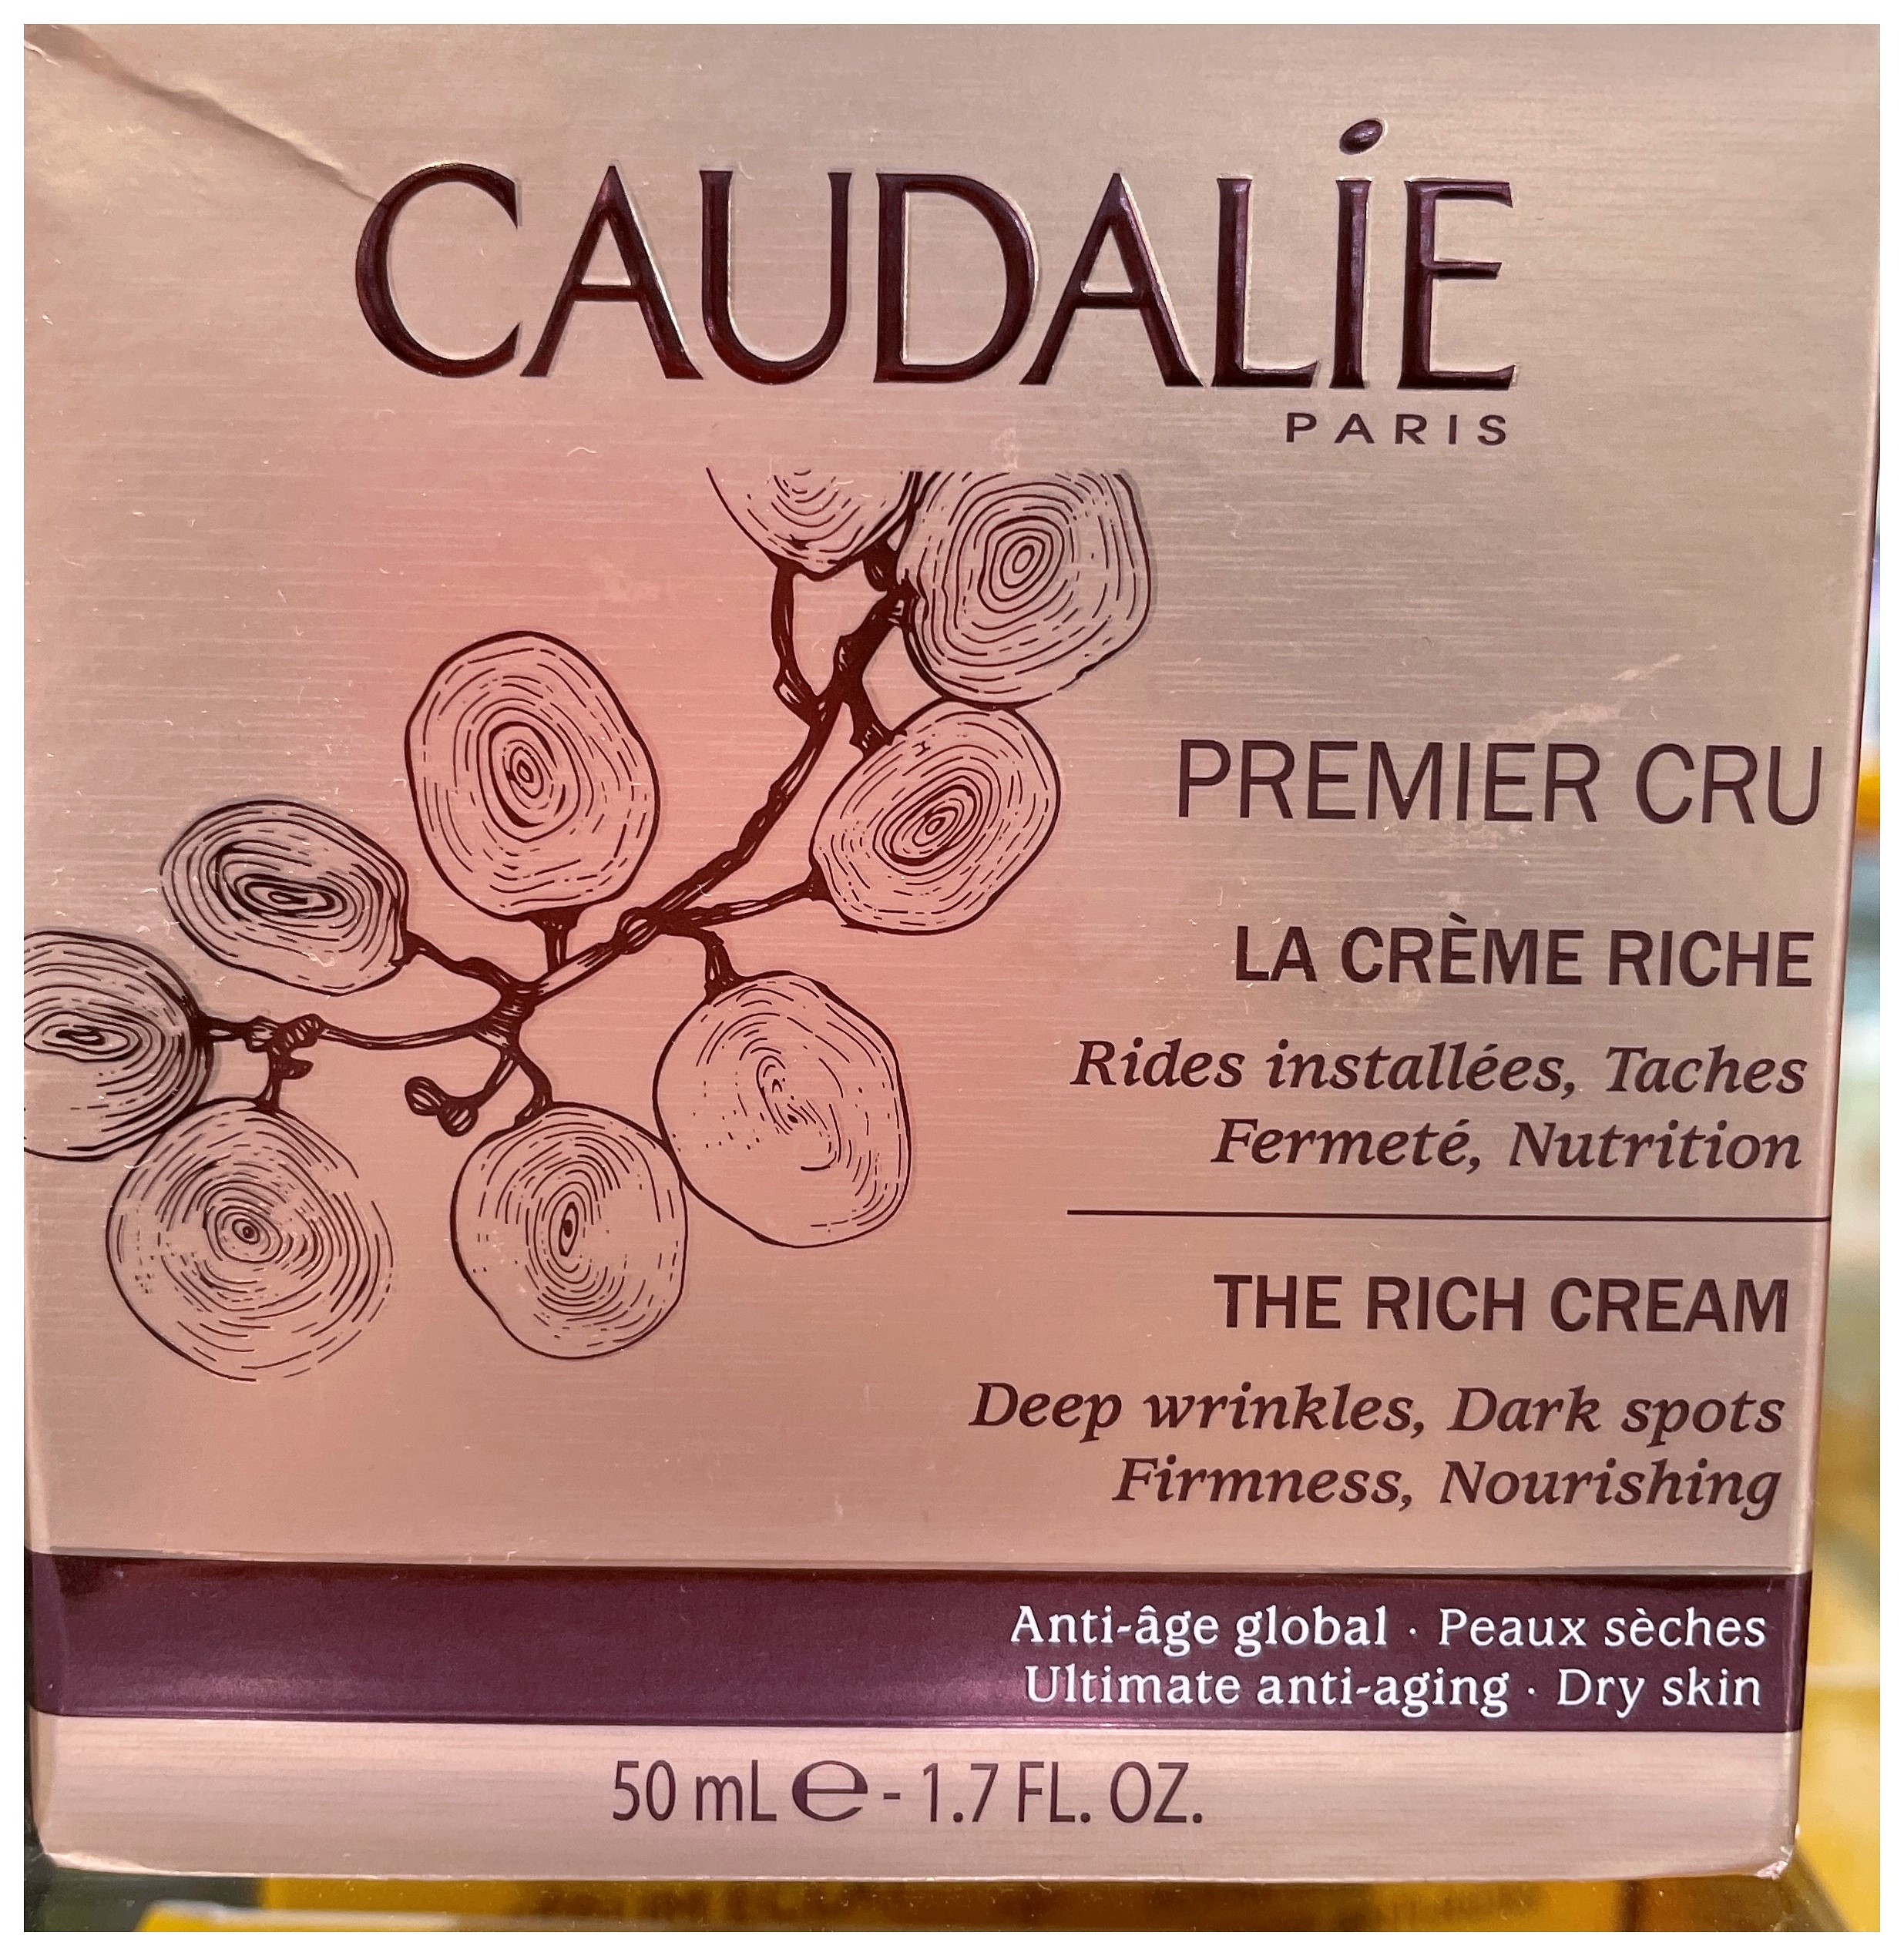 Premier Cru es la combinación de todos los ingredientes patentados de Caudalie una acción antiedad completa para rejuvenecer